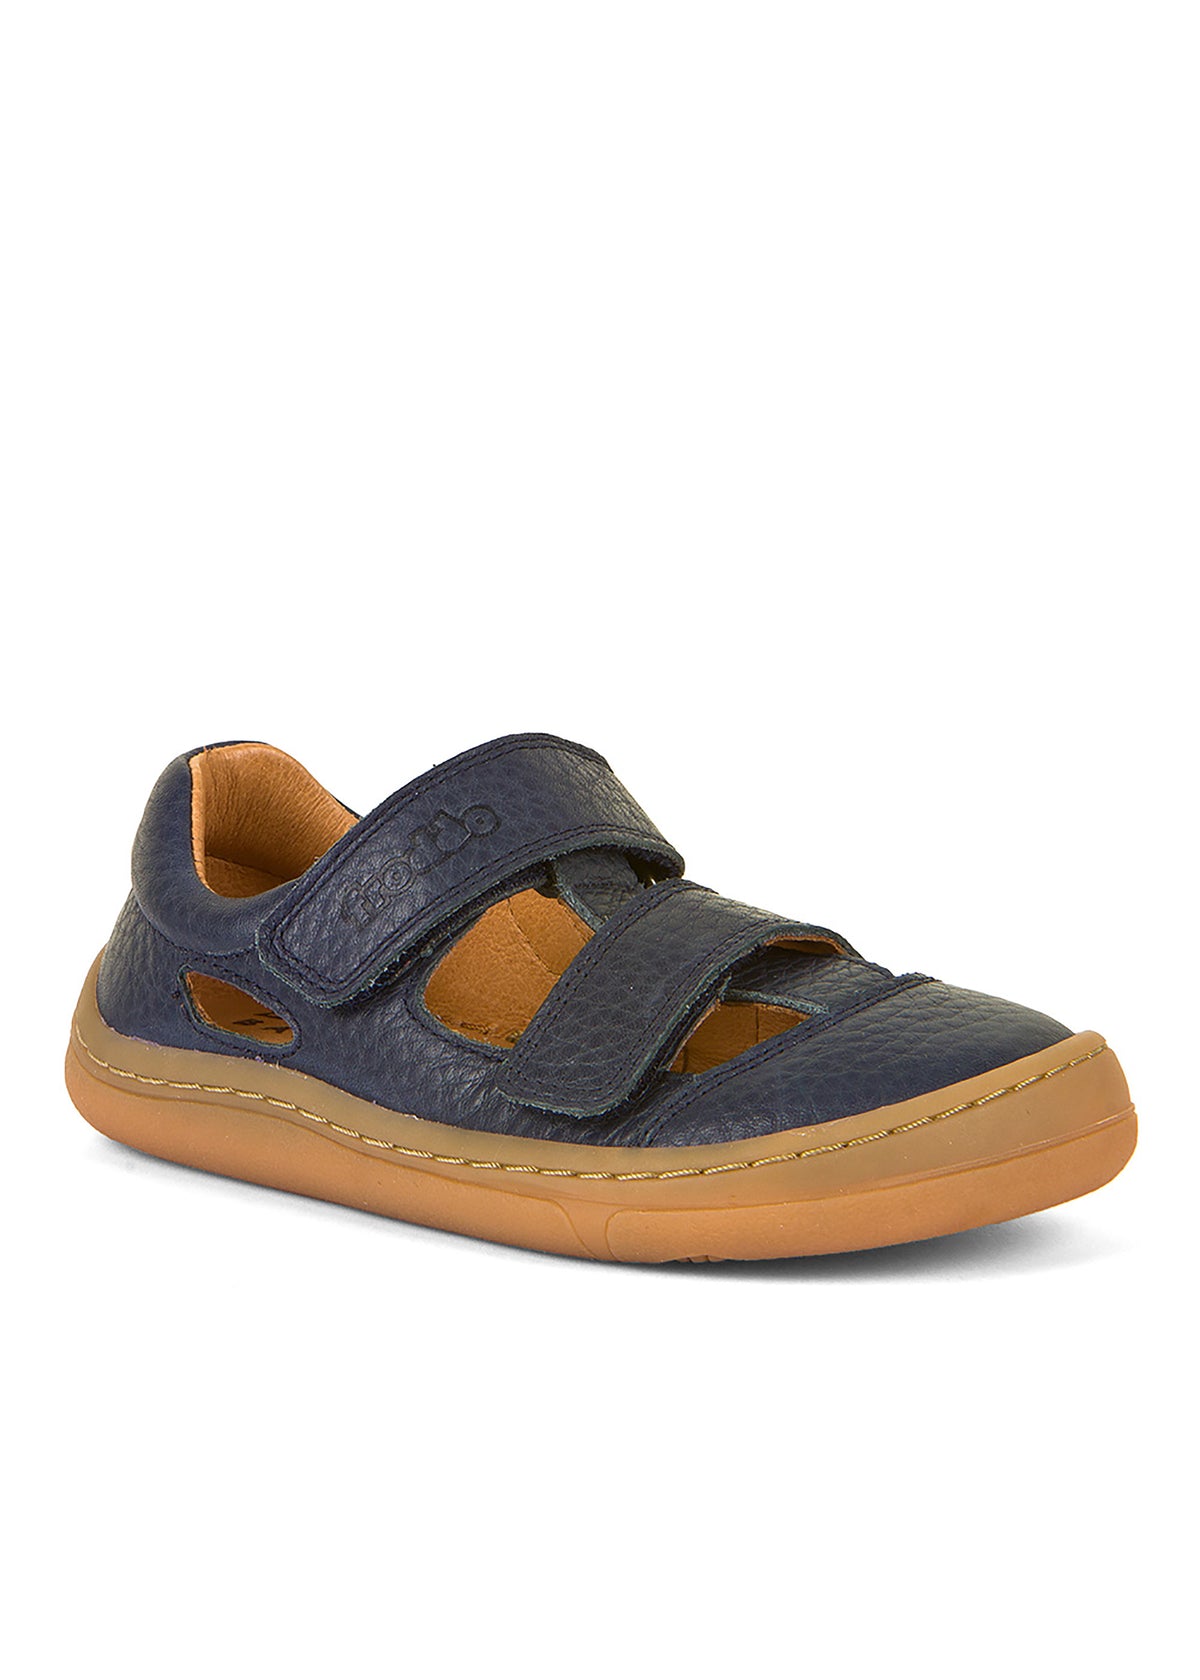 Children's barefoot sandals - dark blue